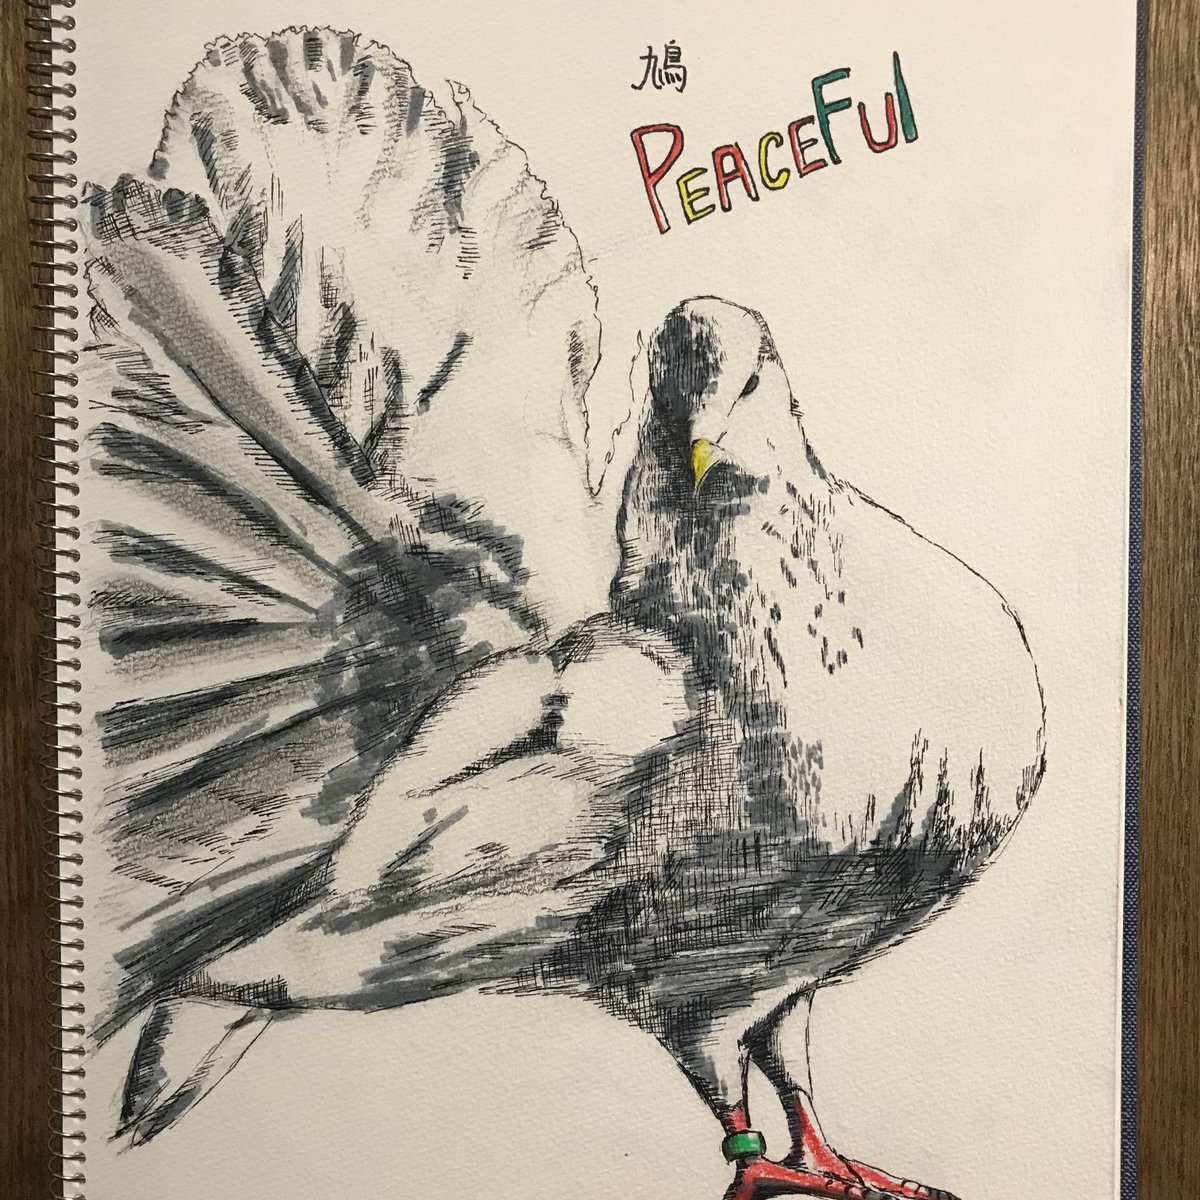 ちょーすけ 久々絵を描いた 鳩 平和の象徴 Peace Dove Pencil Pencildrawing Pencilart Brushpen Brushpenart Pen Penart 鉛筆画 筆ペン イラスト Art アート 絵描きの輪 絵描きさんと繋がりたい 平和 T Co Tluegch5qh